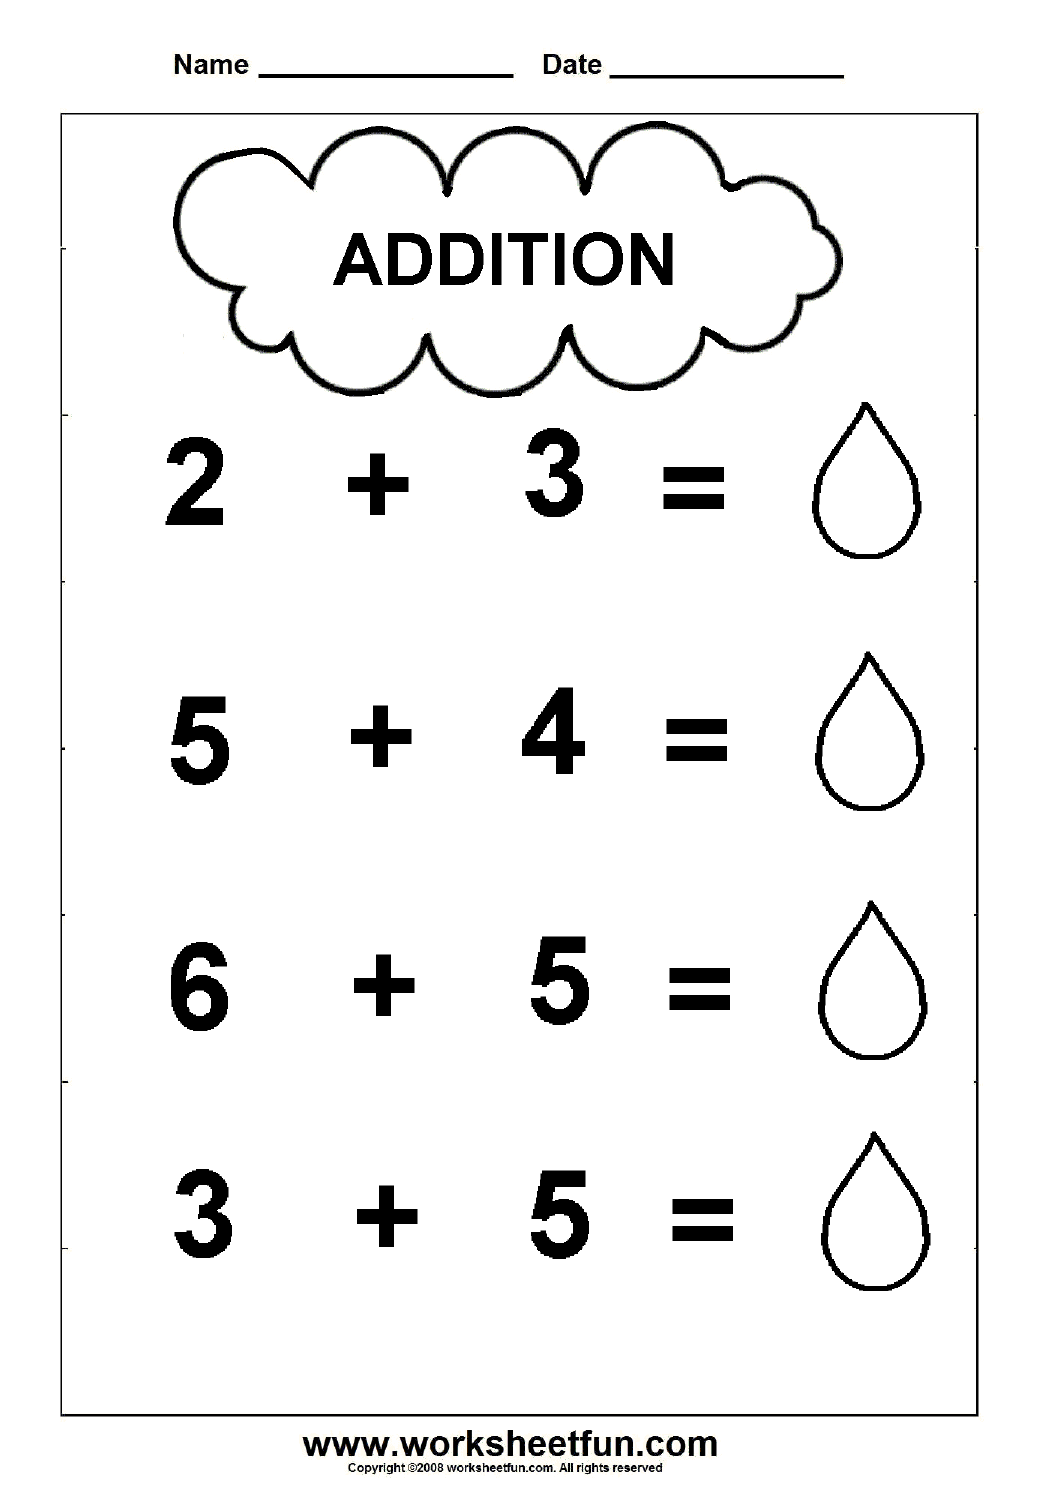 beginner-addition-2-kindergarten-addition-worksheets-free-printable-worksheets-worksheetfun